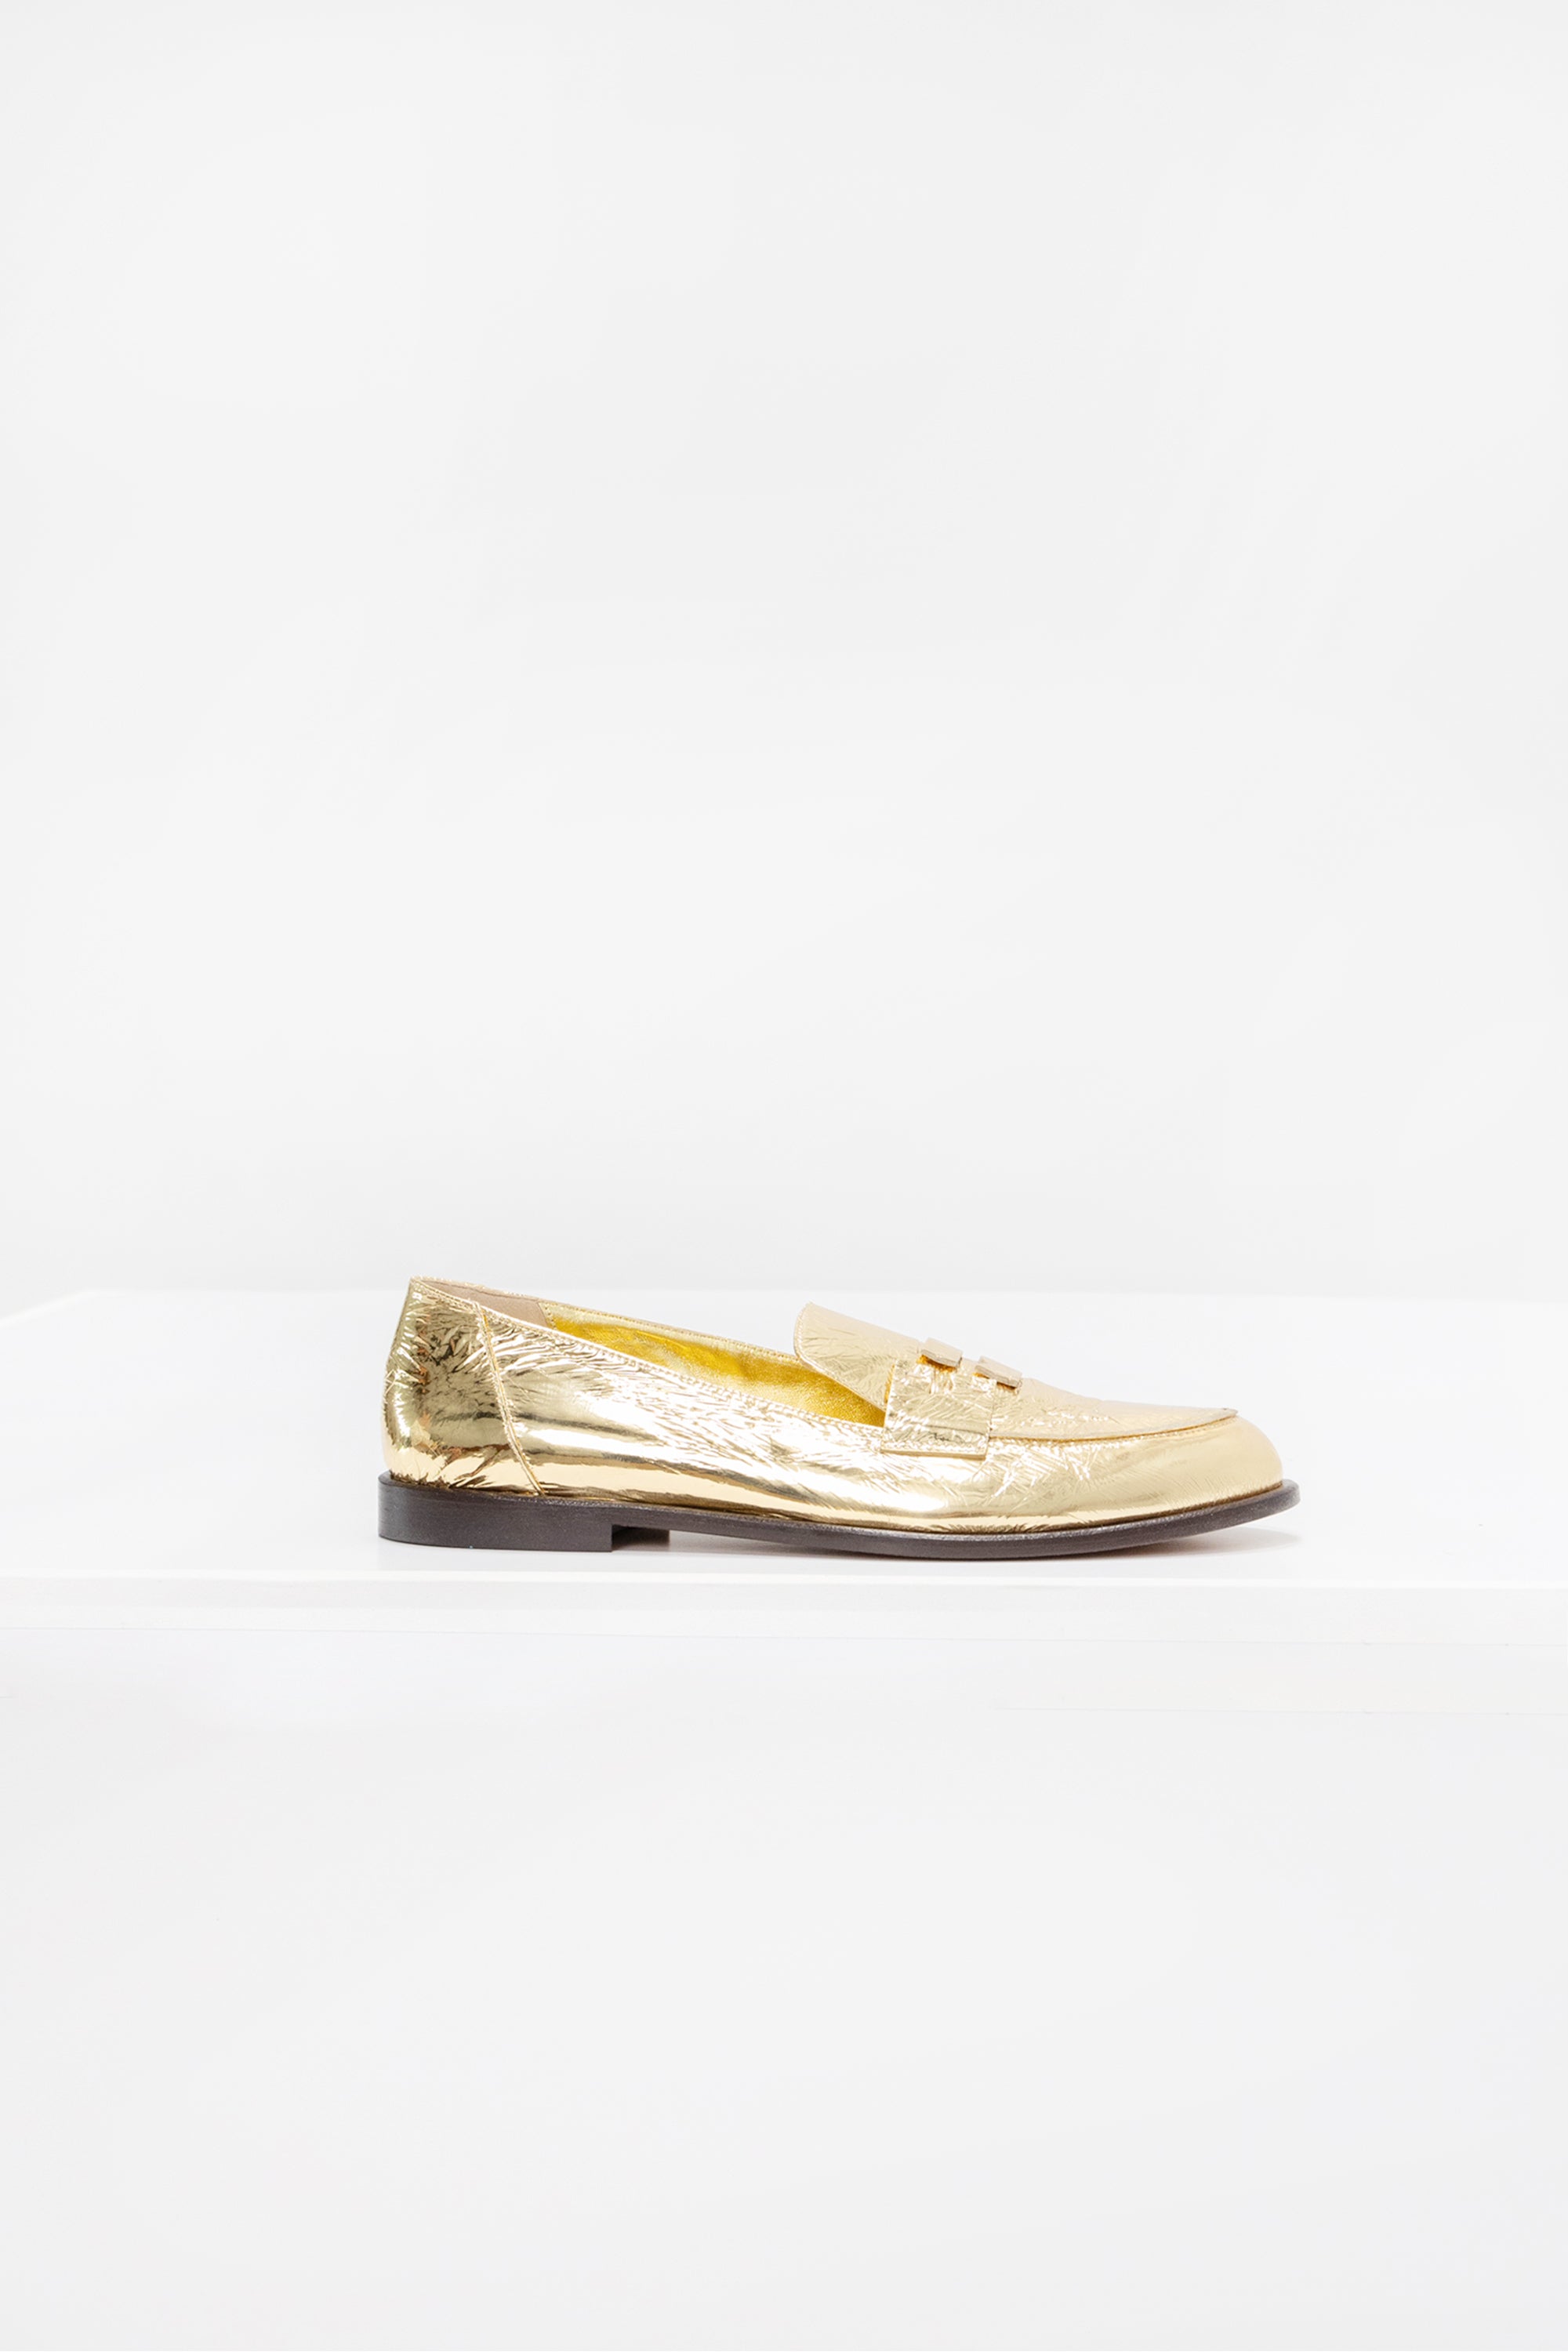 TIBI - Nacho Shoe, Gold